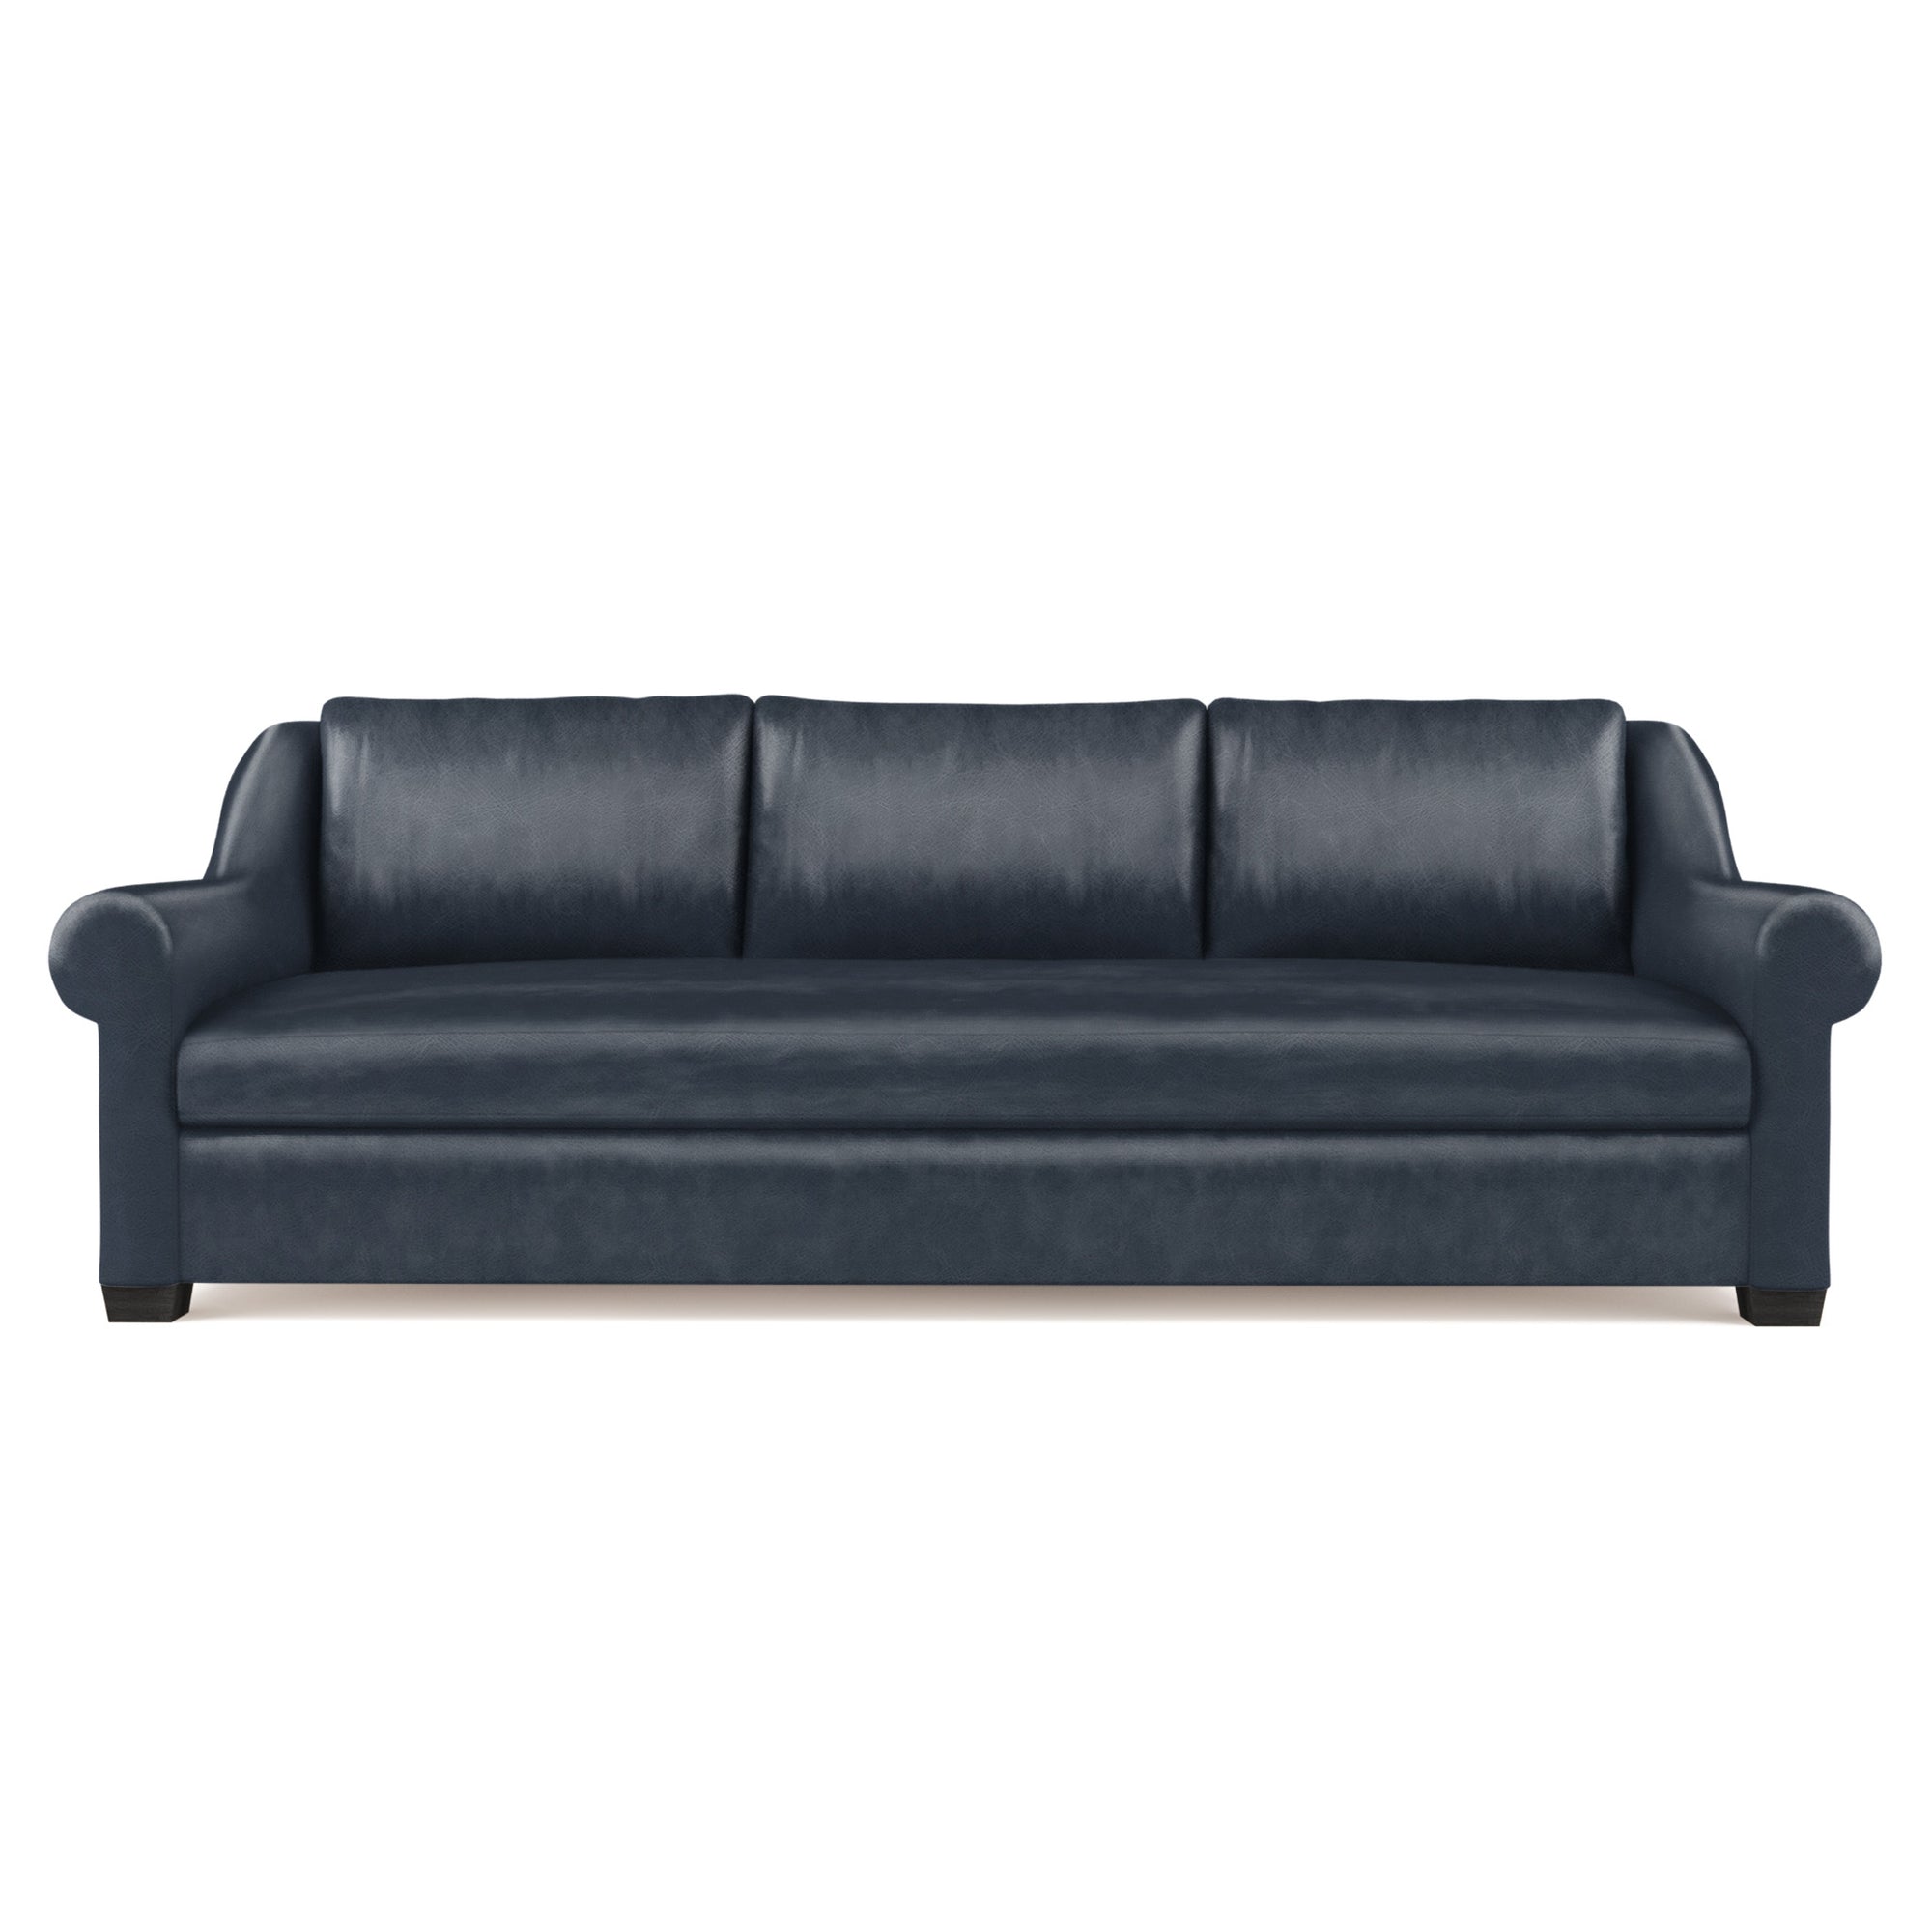 Thompson Sofa - Blue Print Vintage Leather